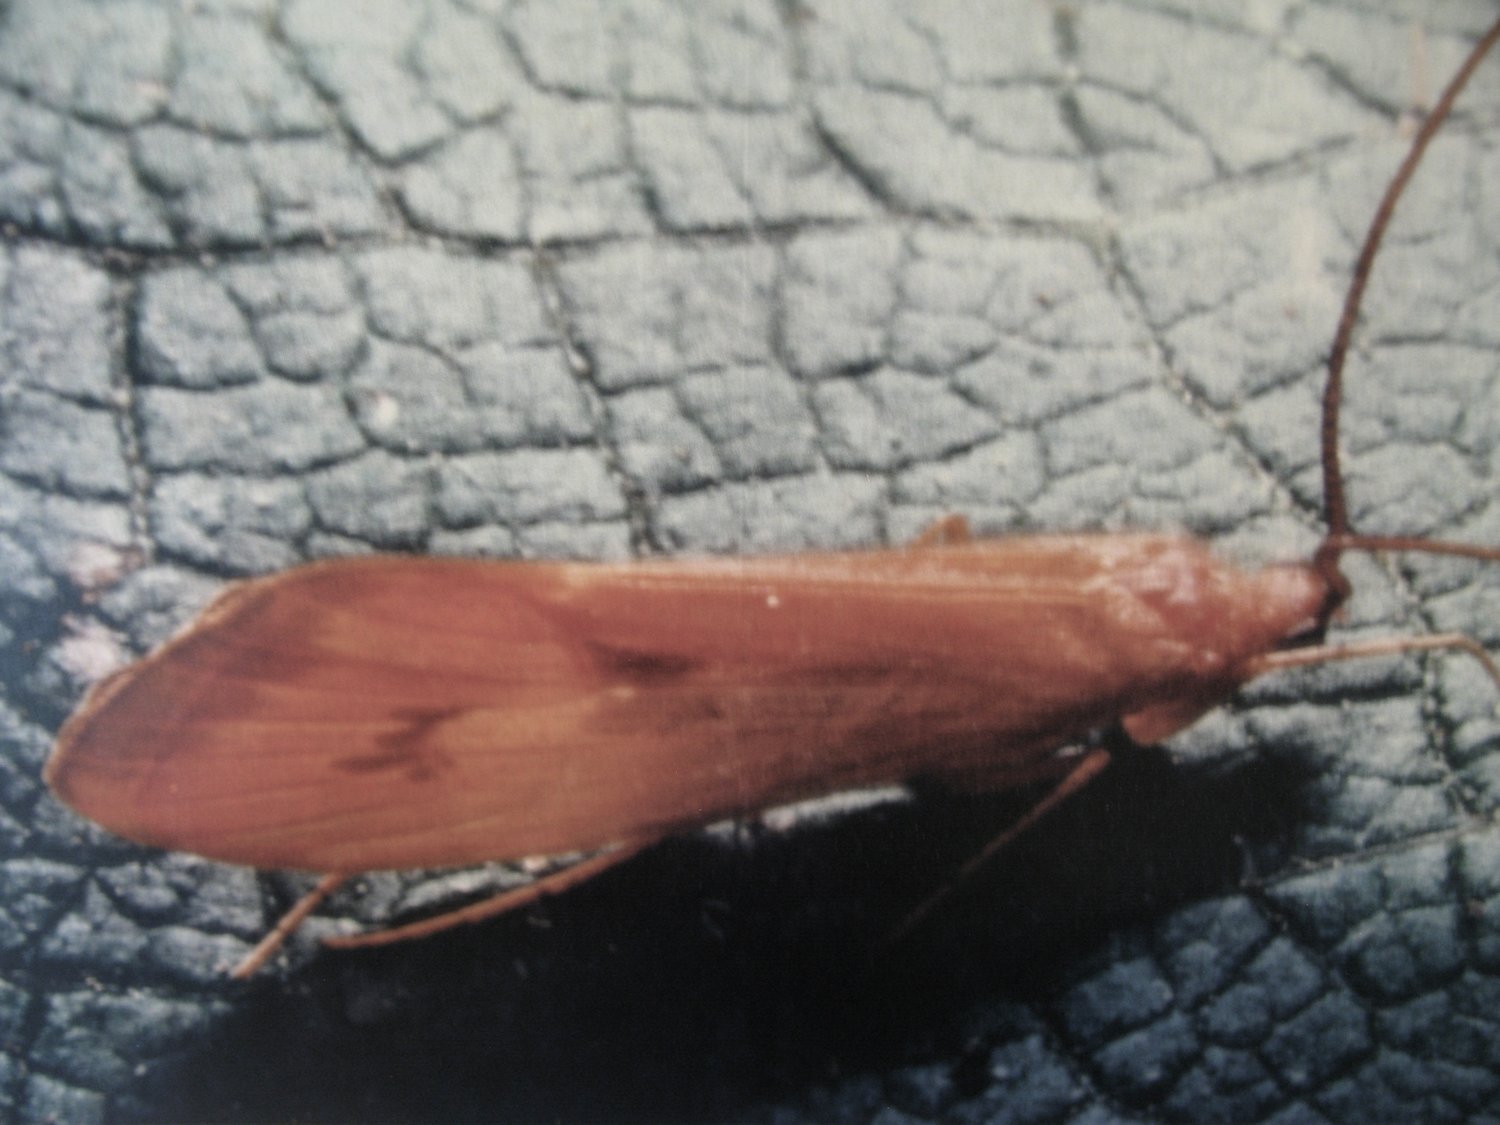 An adult caddisfly.